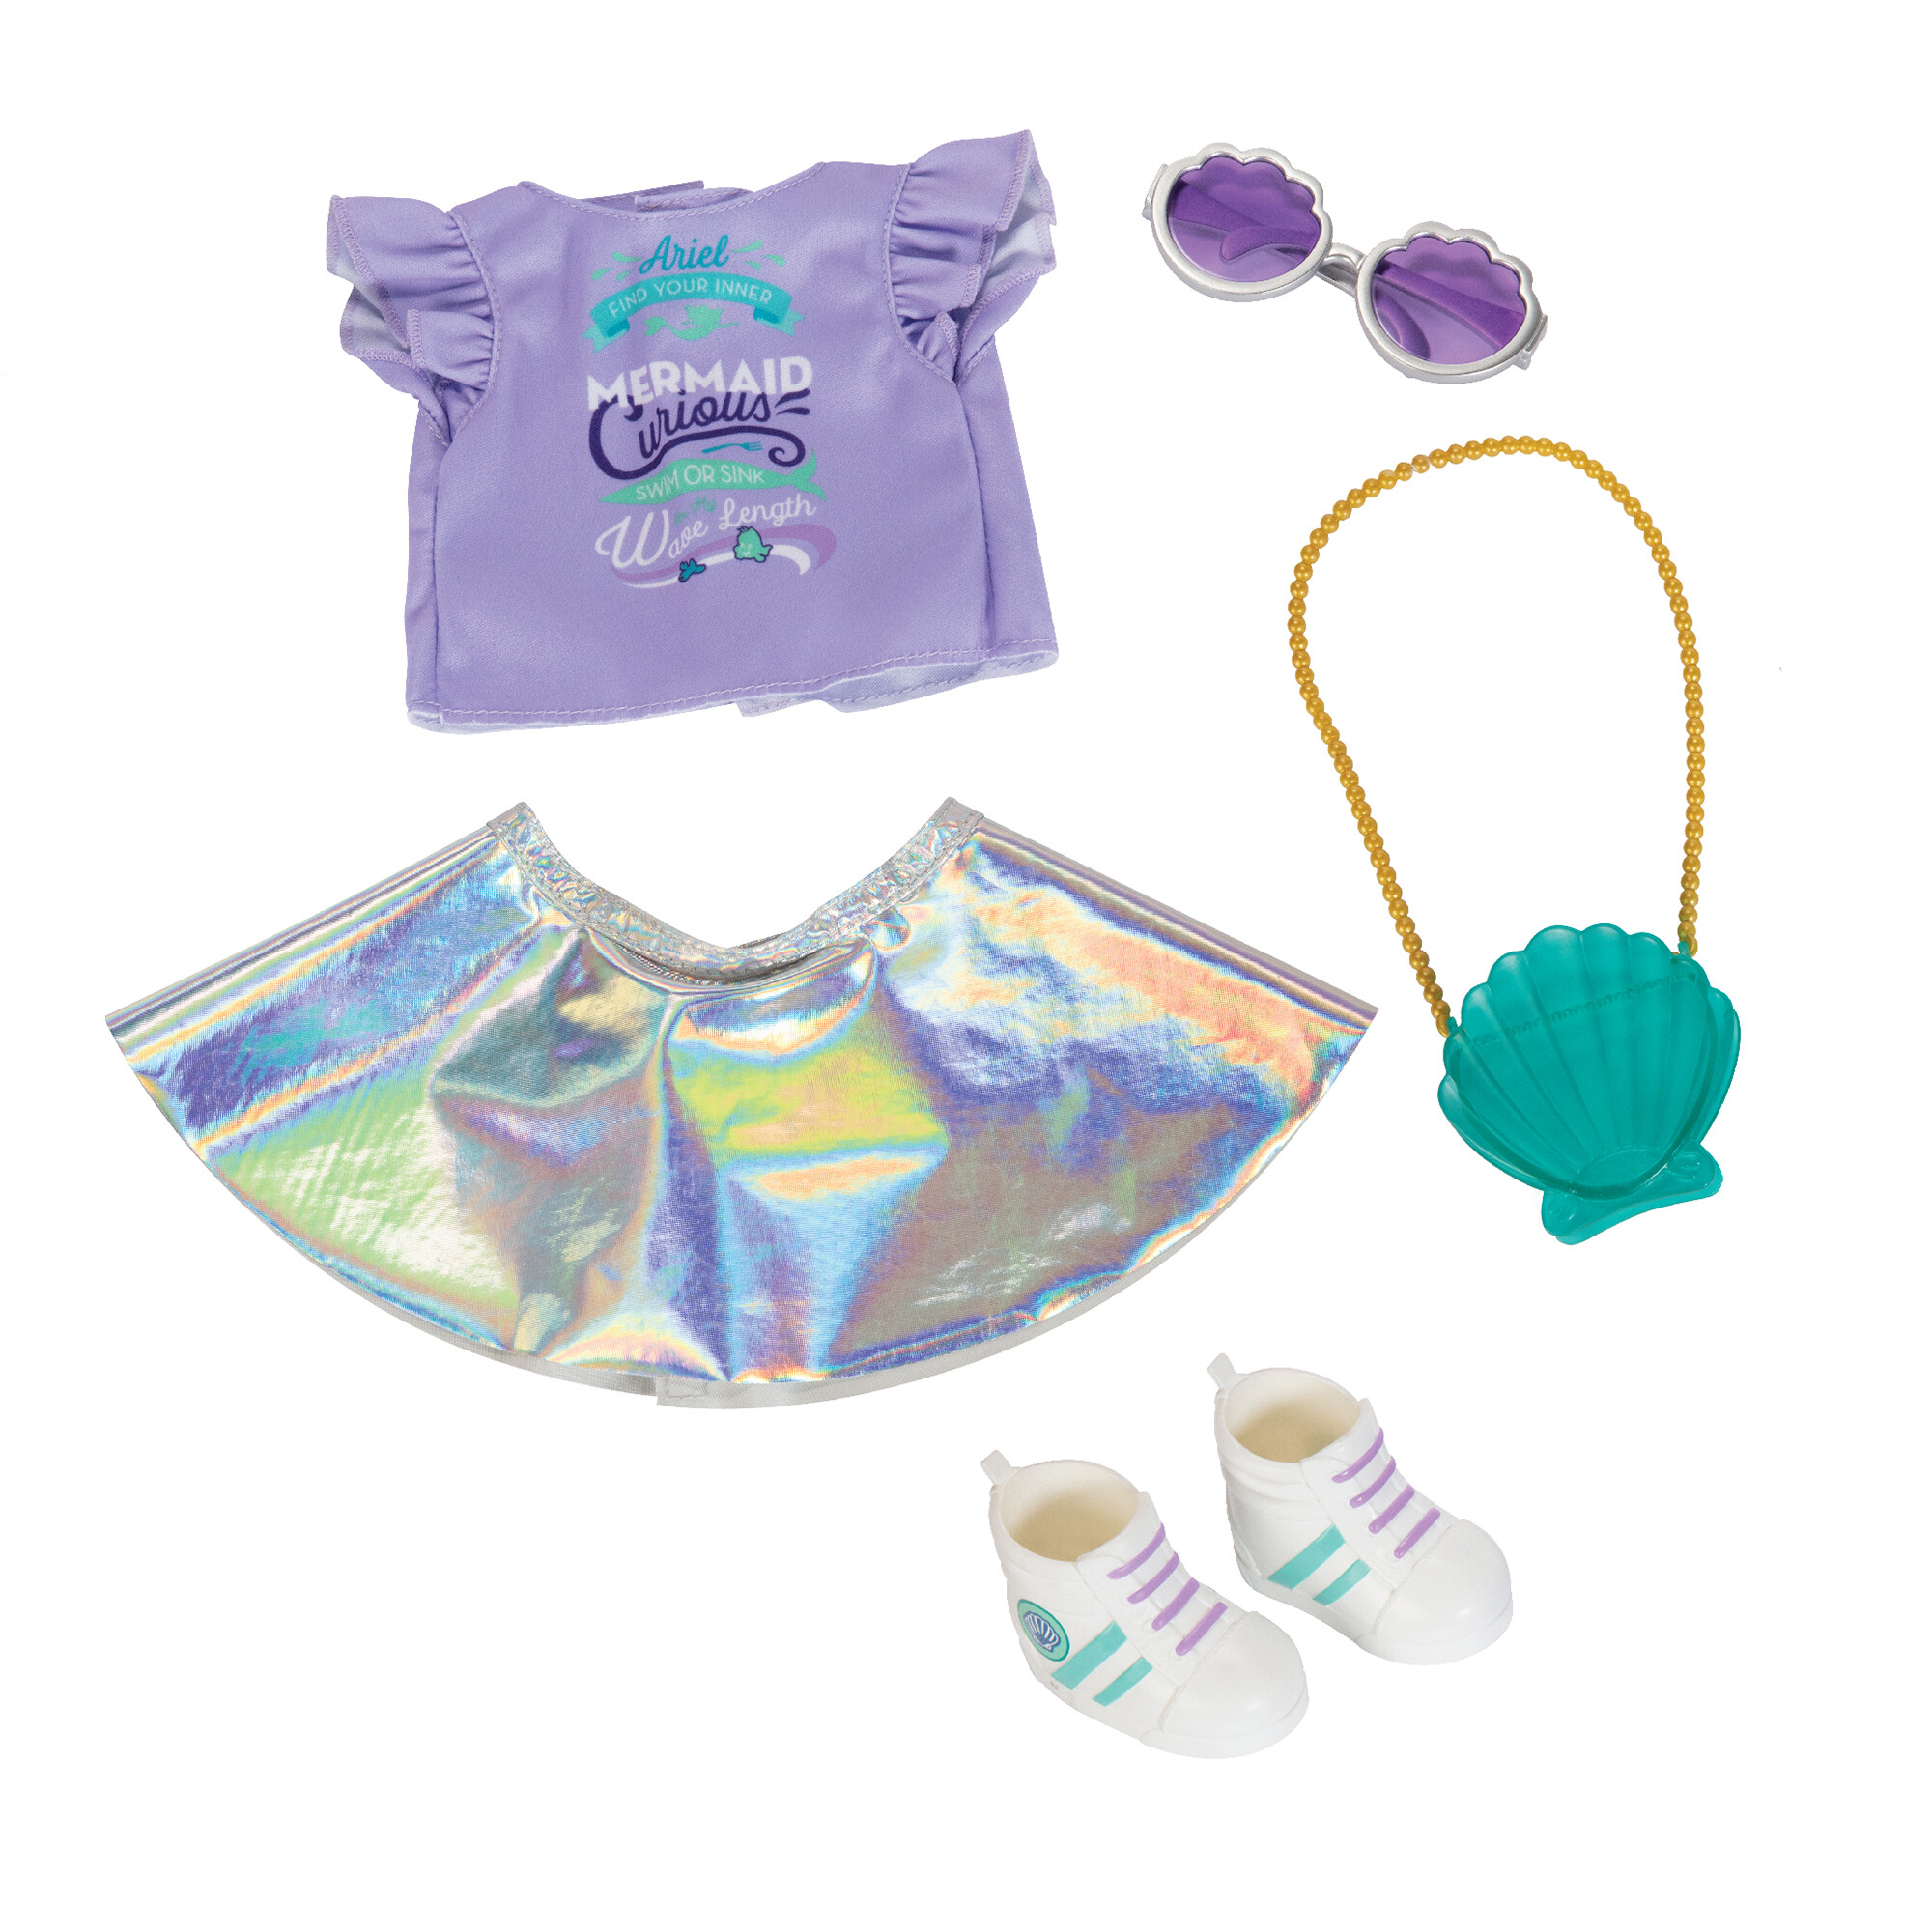 Disney ily 4ever accessory pack ispirato ad ariel con abiti e accessori - DISNEY PRINCESS